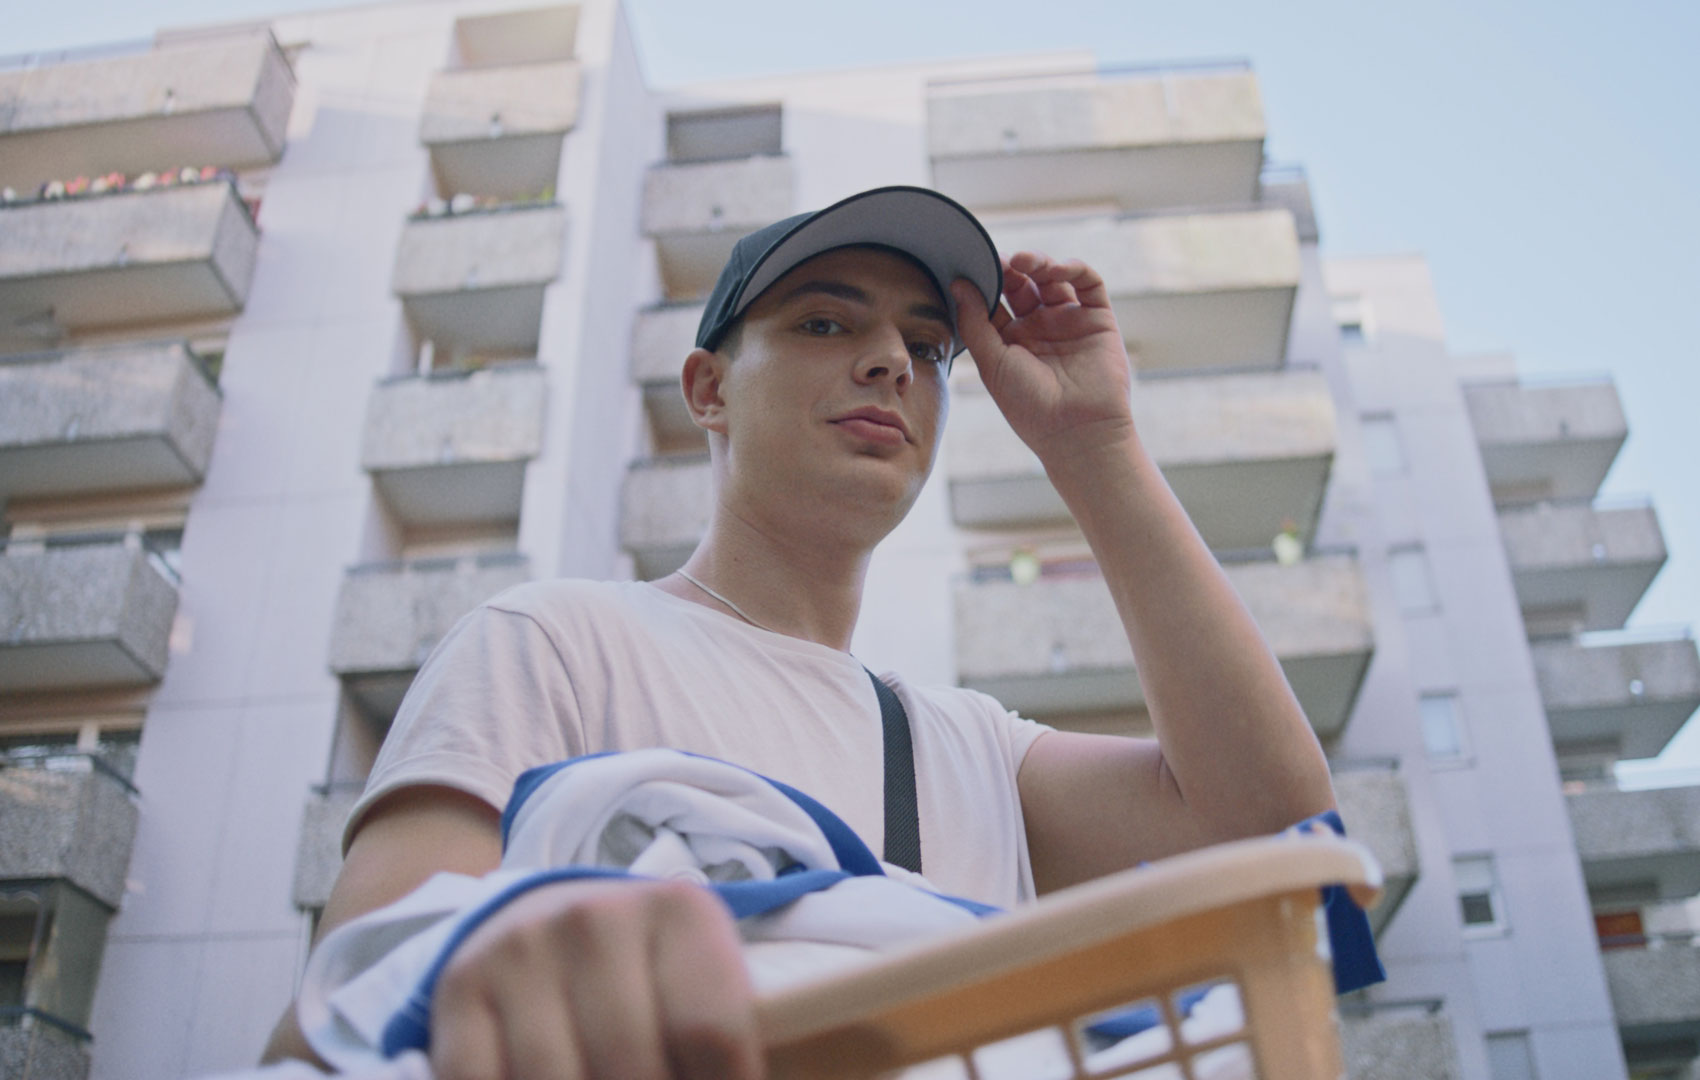 Ein Teenager vor einer Hochhaussiedlung mit Wäschekorb in der Hand. Die Kamera schaut von unten zu ihm hoch; er blickt direkt hinein.